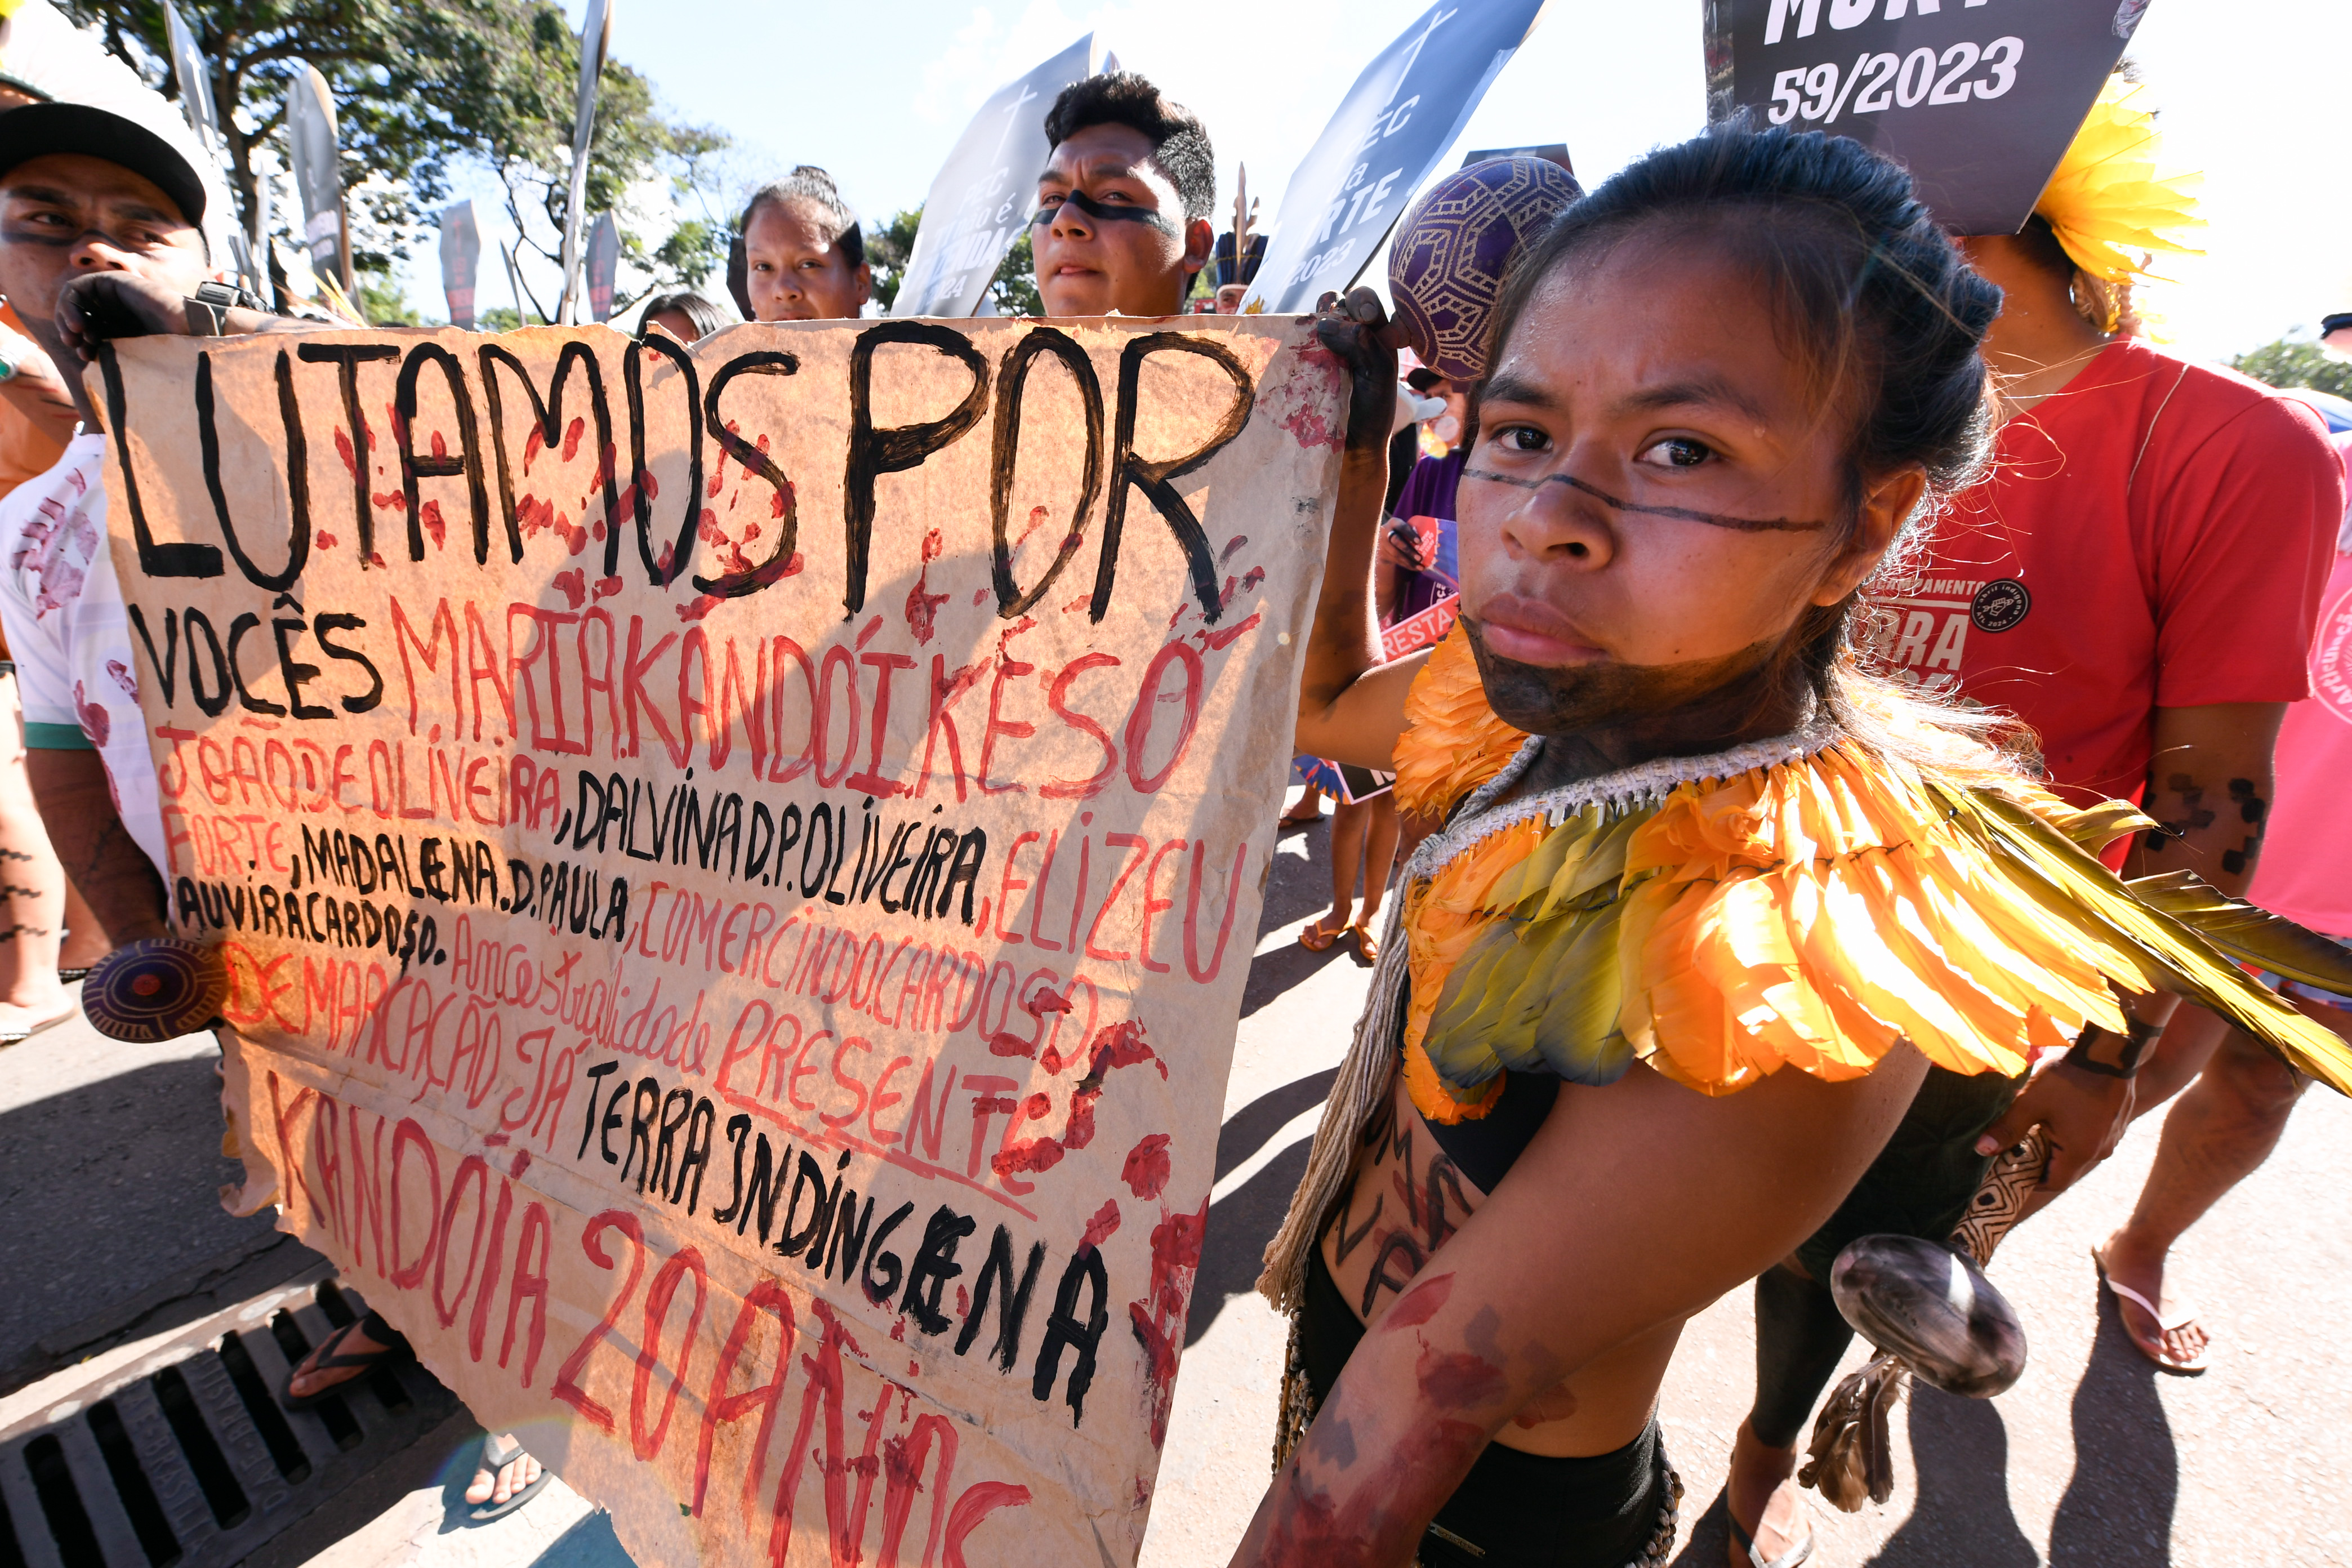 Mulher indígena segurando um cartaz na marcha do Acampamento Terra Livre pedindo justiça pelos indígenas mortos em conflitos de demarcação de terra.